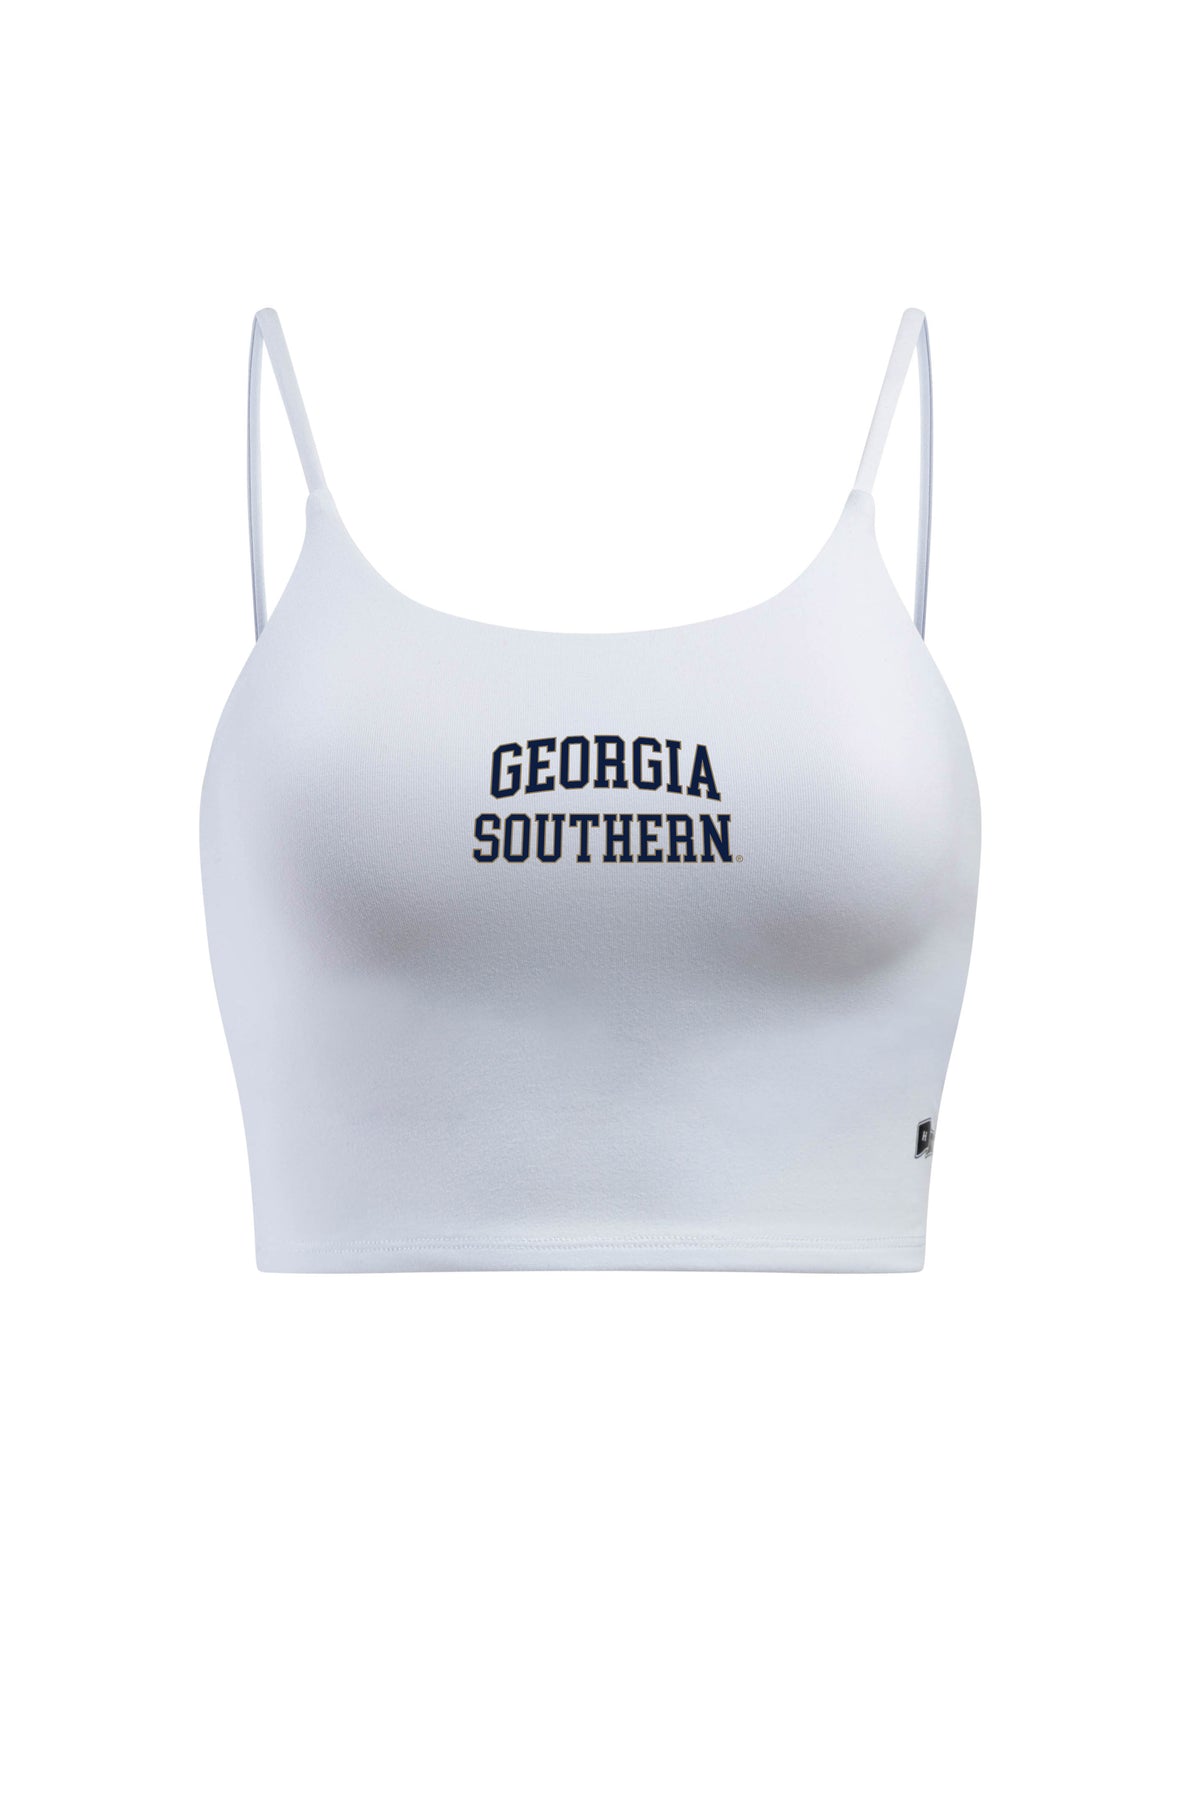 Georgia Southern University Bra Tank Top